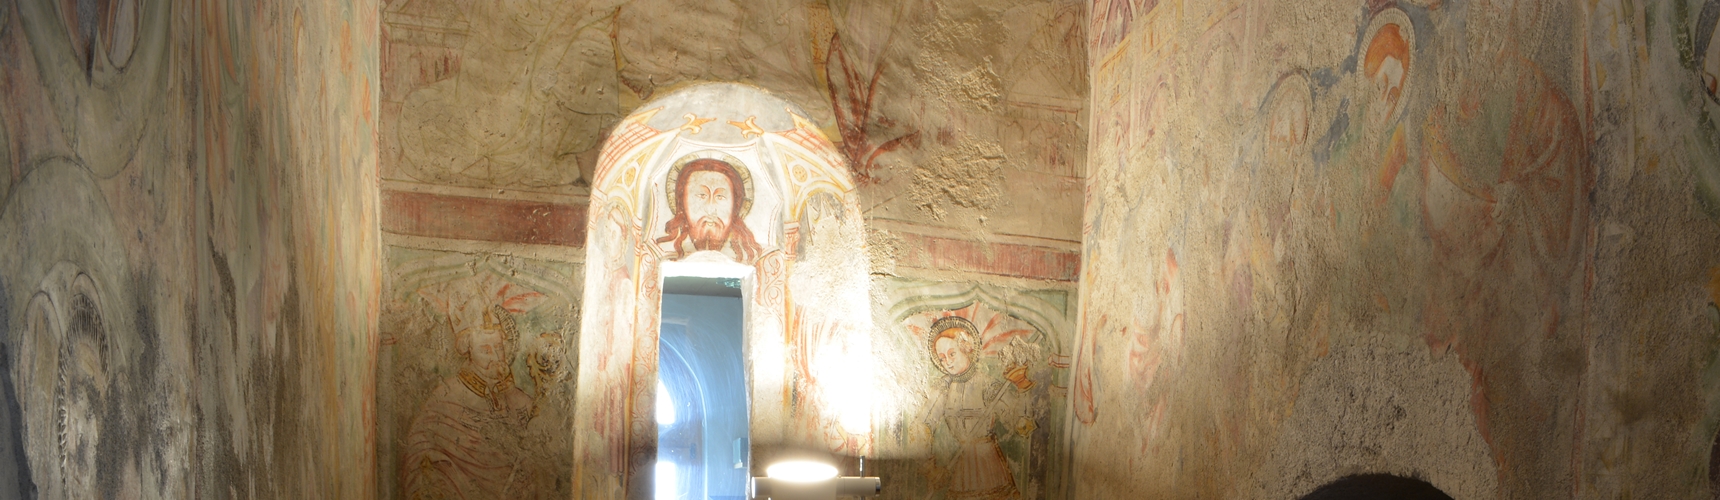 Mittelalterliche Fresken in der Kirche Theodul, Davos Dorf